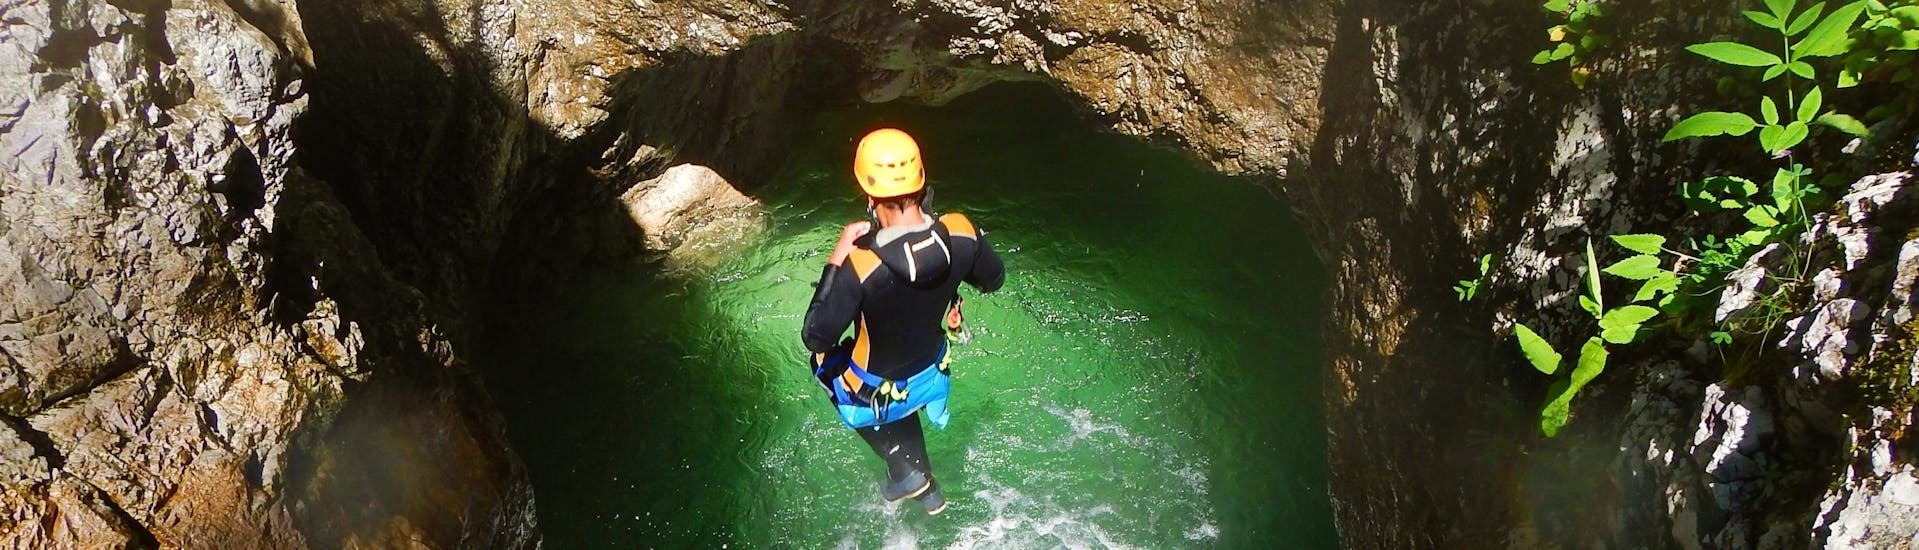 Een persoon springt in het water bij Adventurous Canyoning bij de Weissensee in Karinthië met ARES Drautal Canyoning.